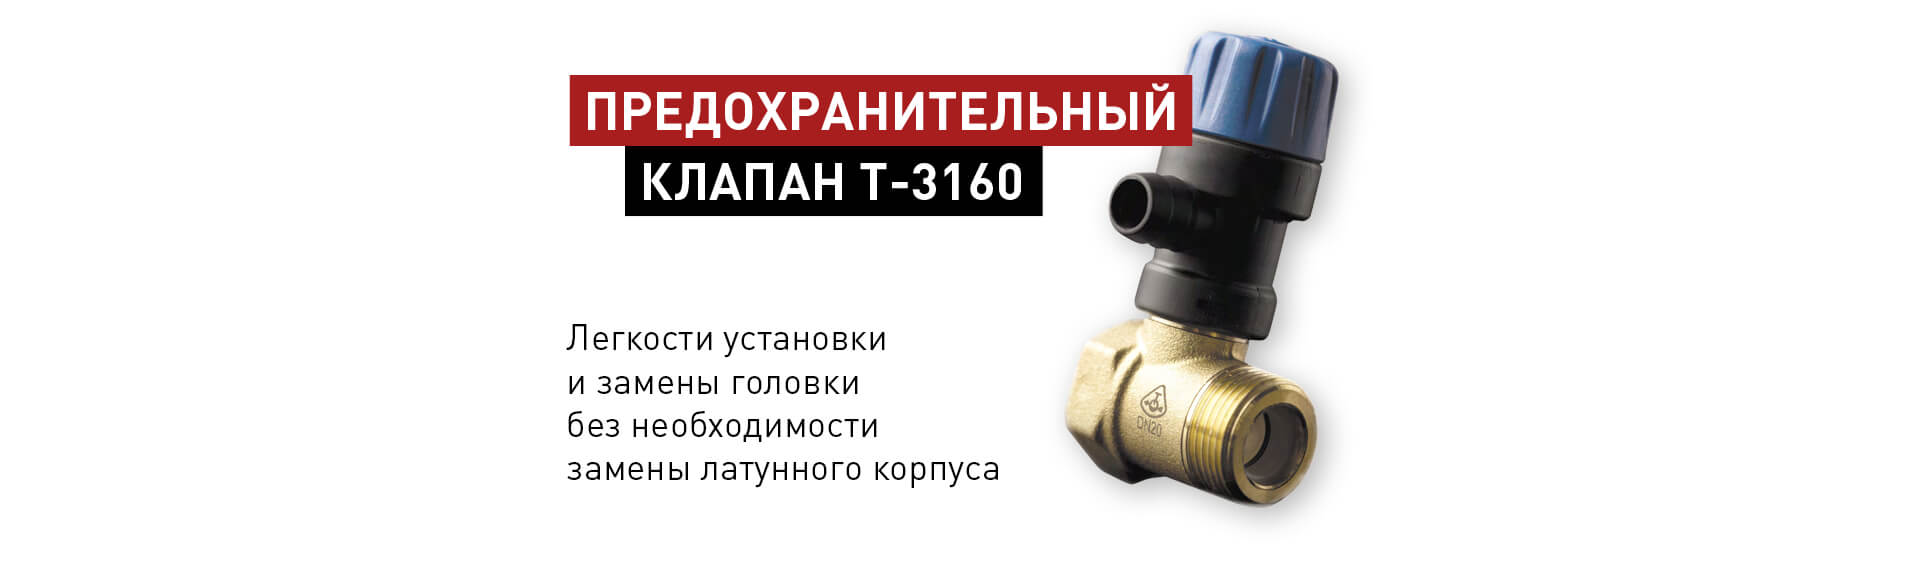 Предохранительный клапан T-3160